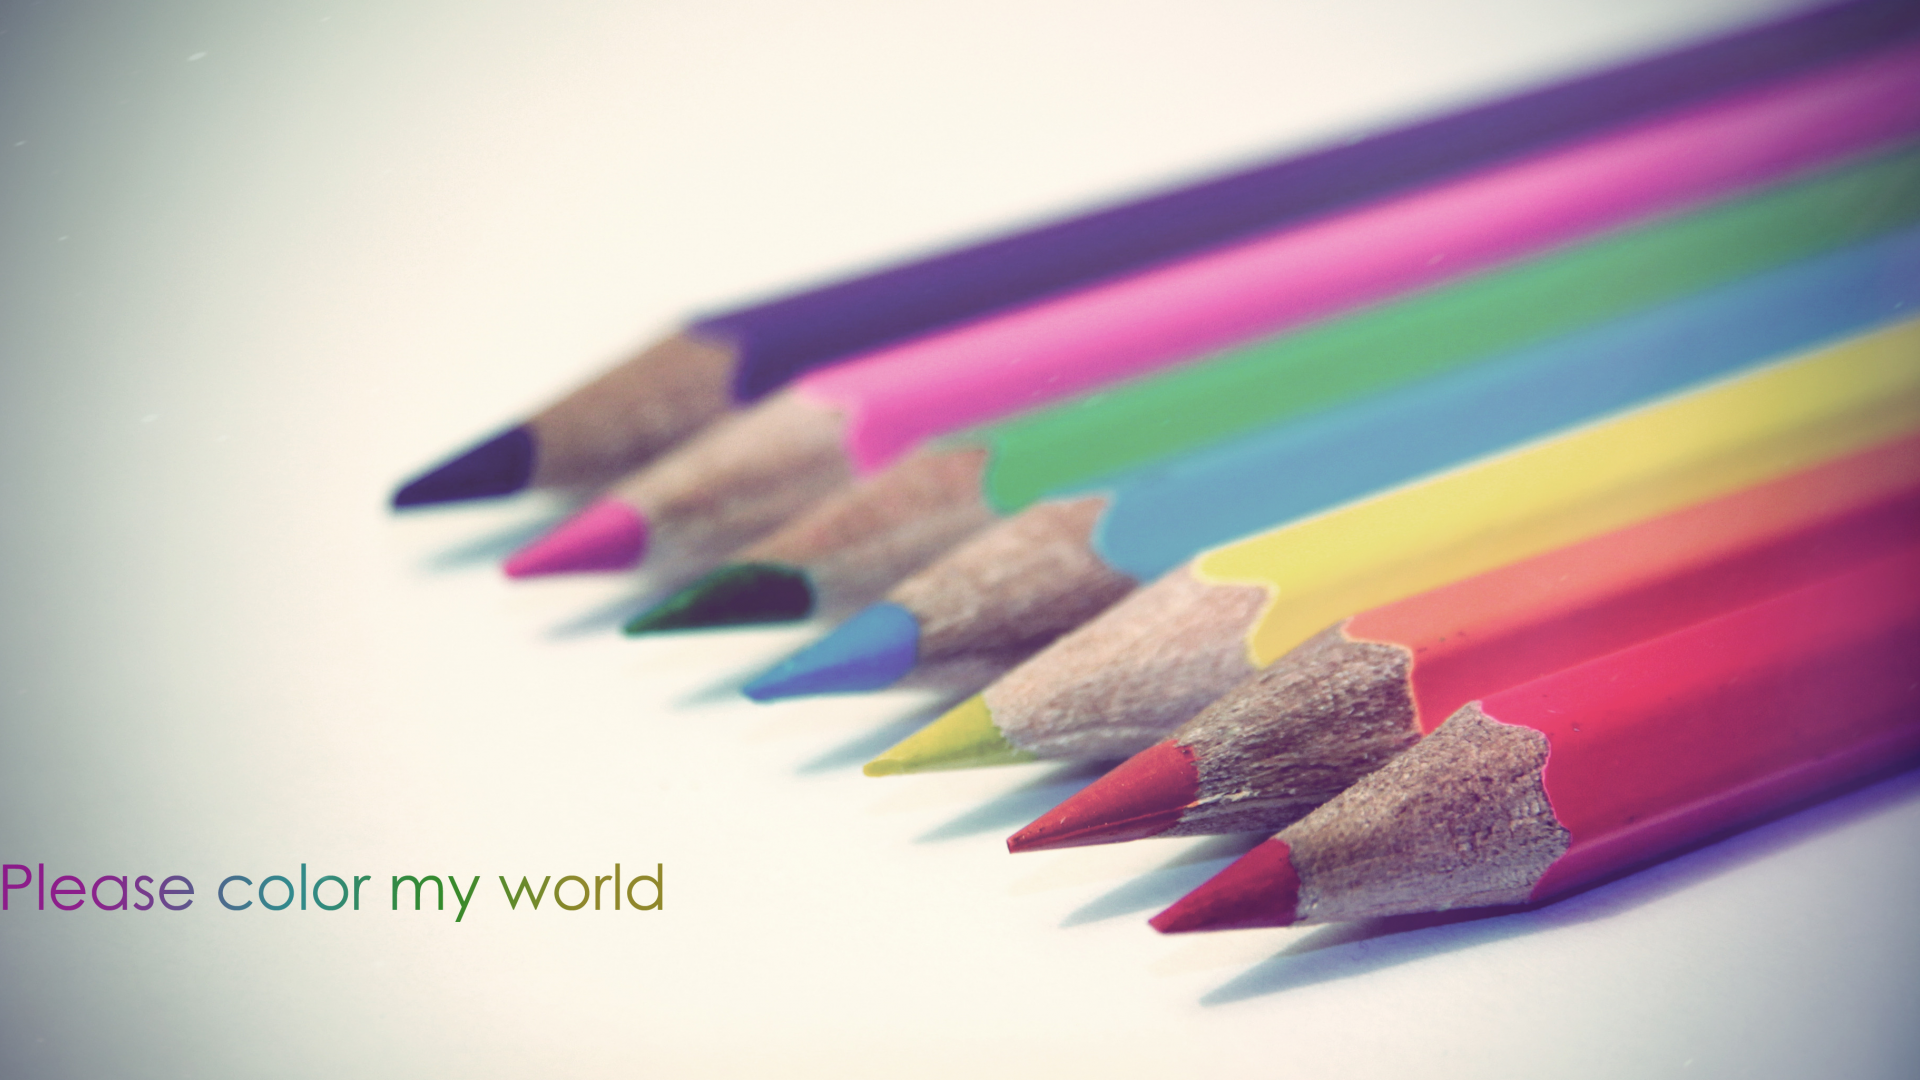 разукрась, карандаши, пожалуйста, мой, мир, разноцветные